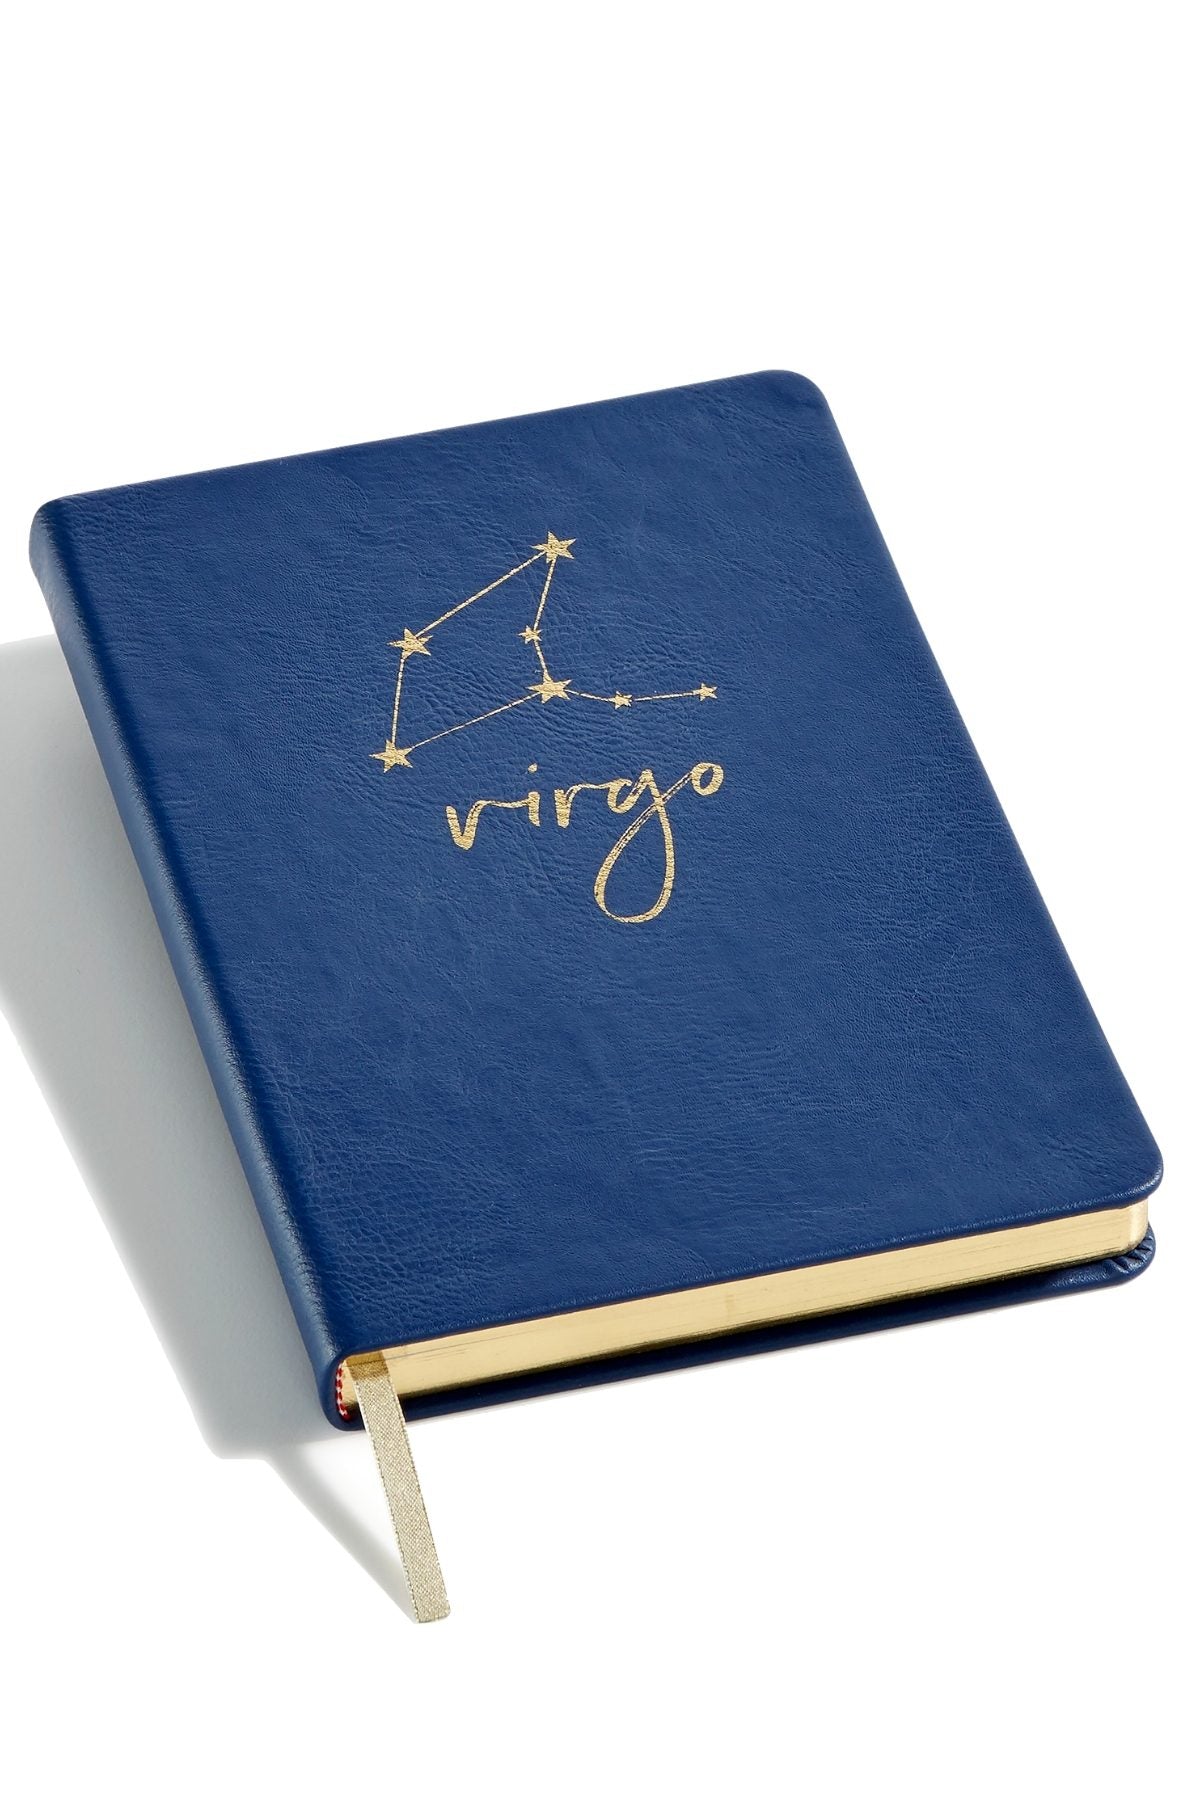 Celebrate Shop Navy VIRGO Zodiac Faux-Leather Notebook